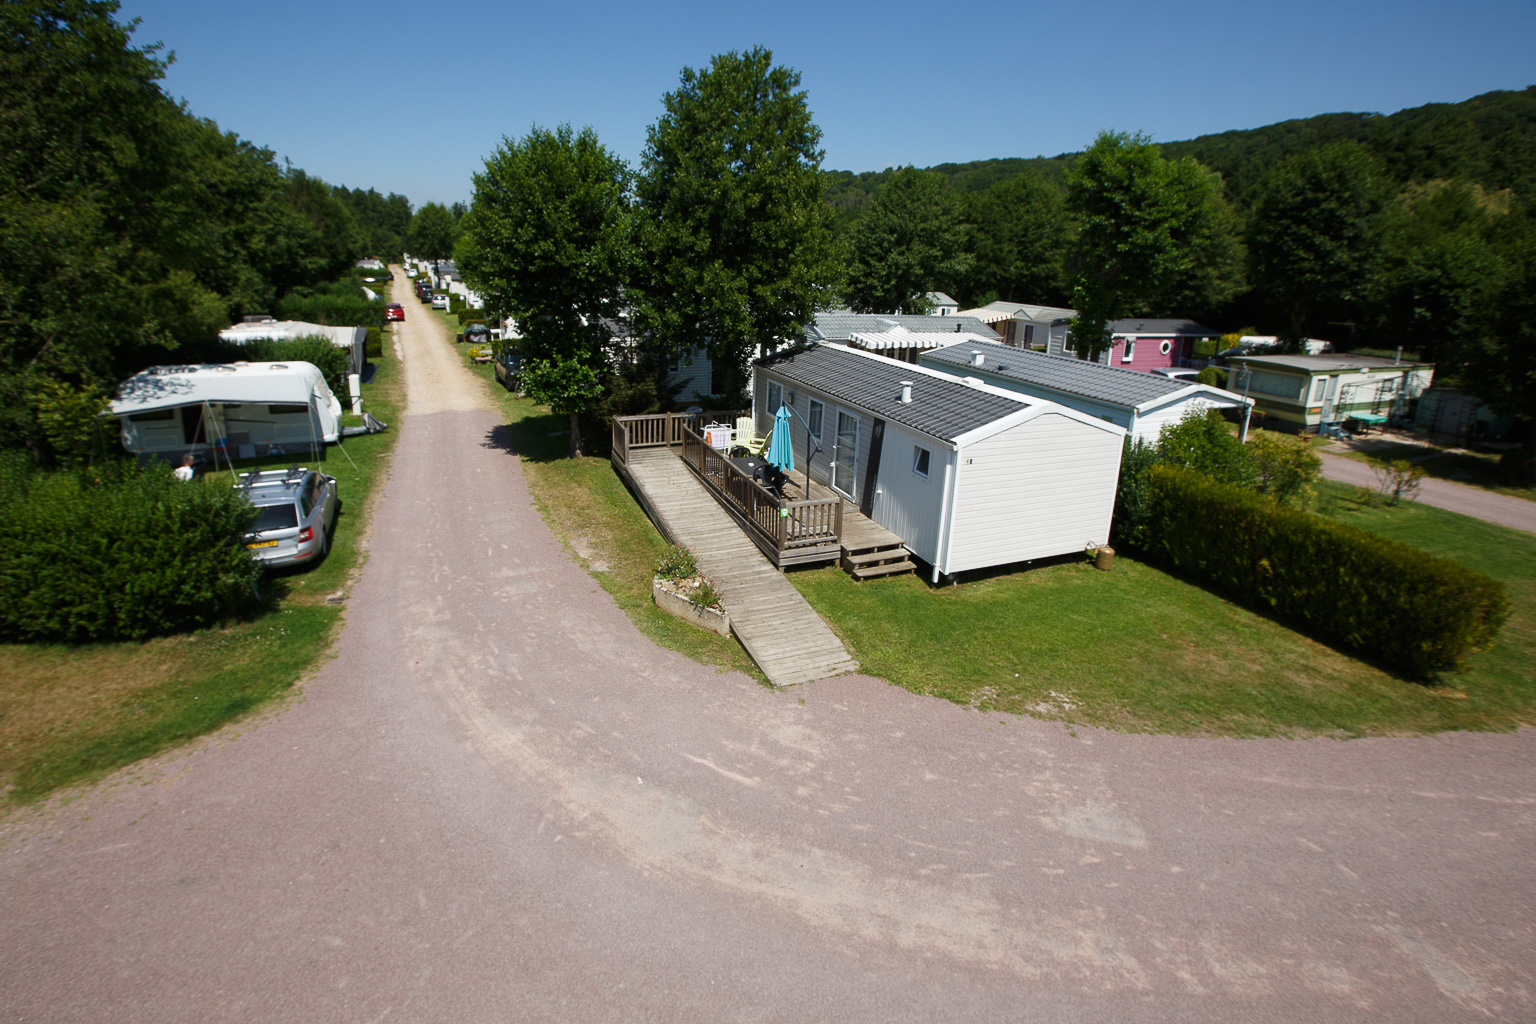 Location - Mobil-Home - Privilege - Pmr -2 Chambres - Tv - Avec Terrasse Semi Couverte (Mercredi/Mercredi) - Camping Sites et Paysages Domaine de la Catinière